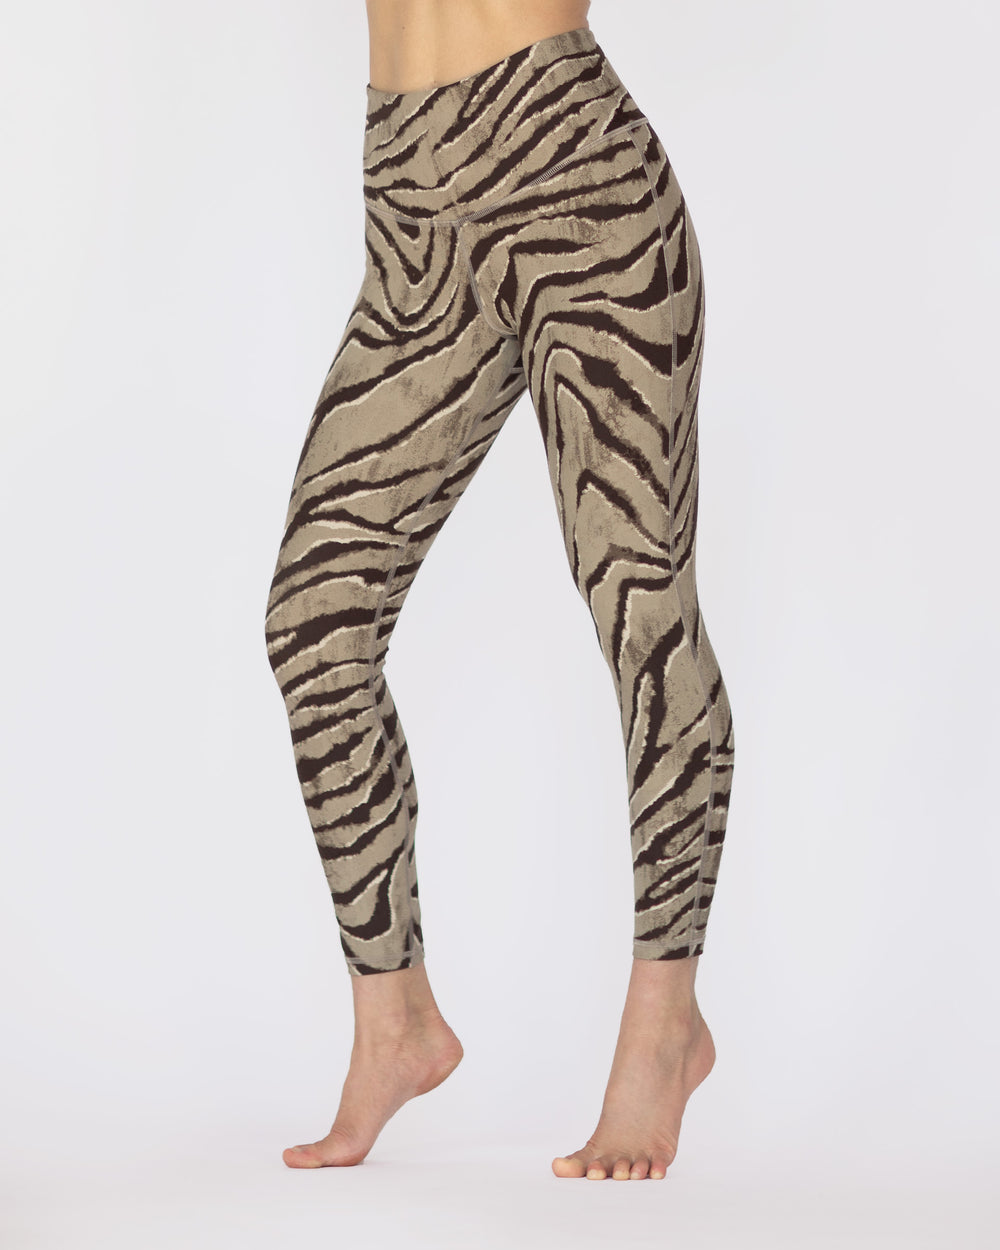 Mirna High Waist Leggings- Tiger Print – Beat Outdoor Gear